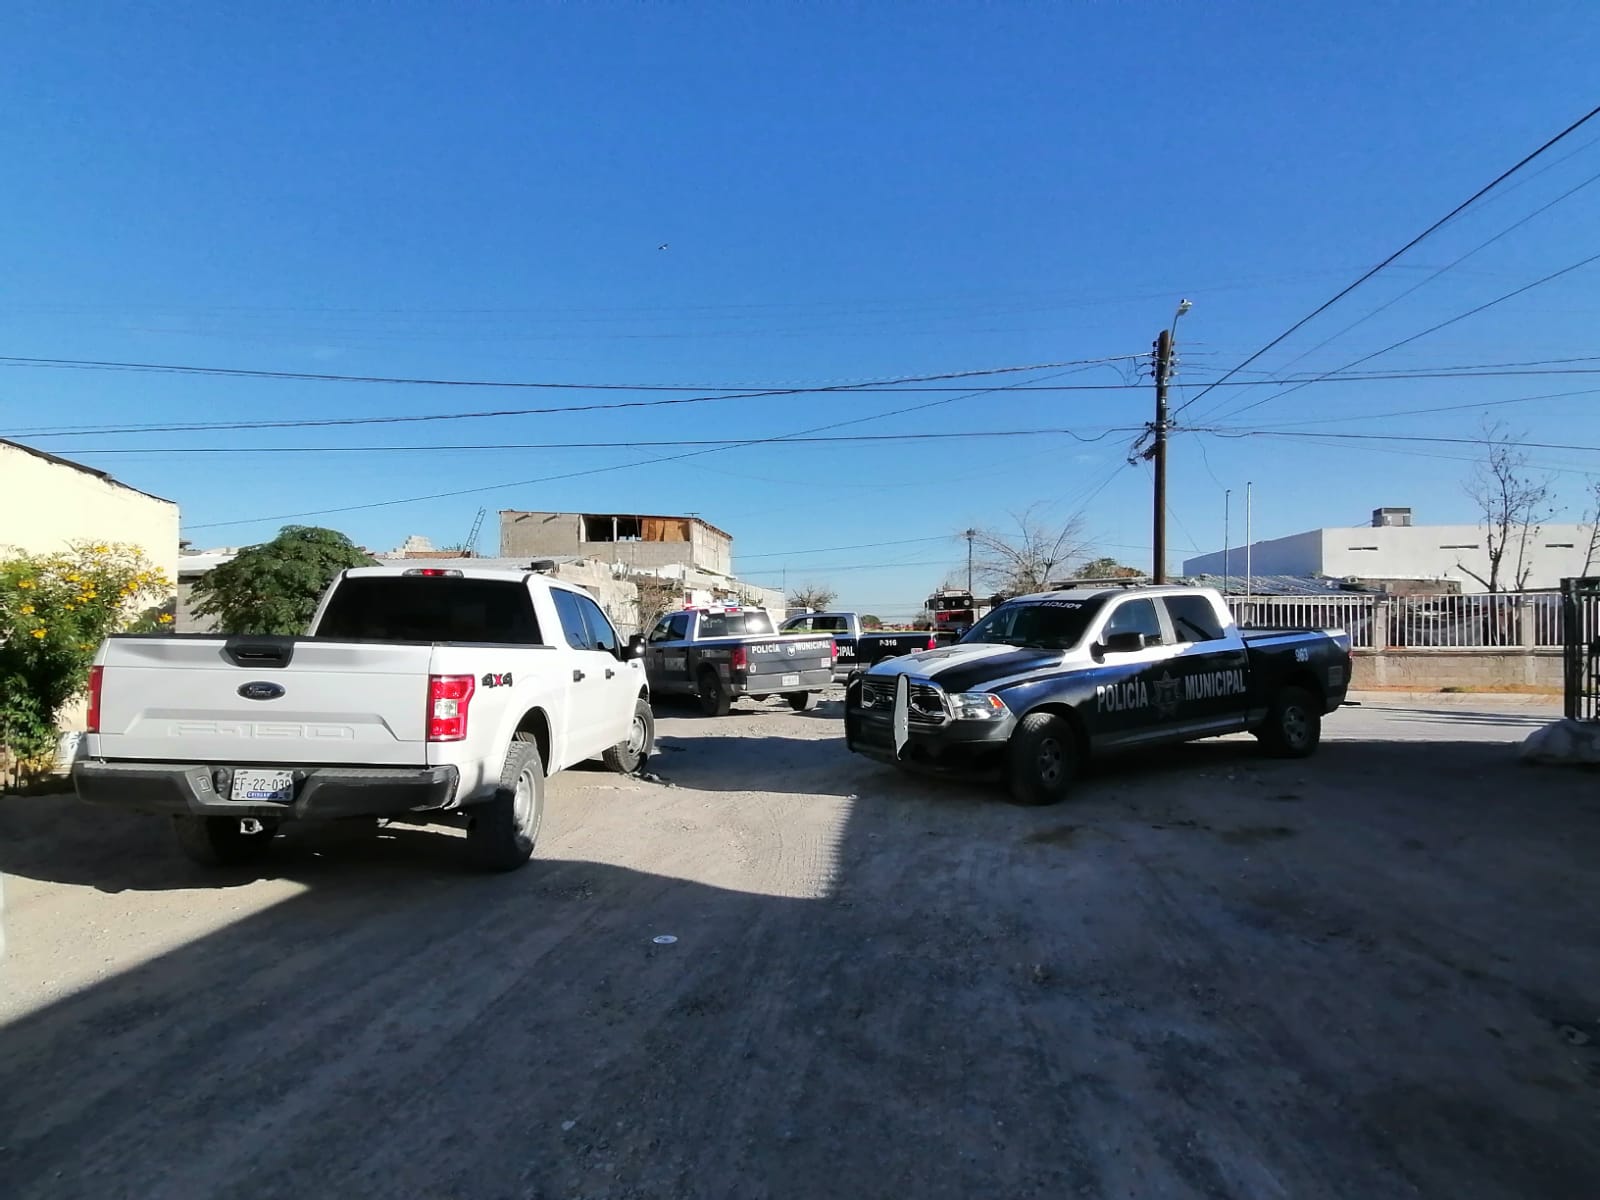 Registra Ciudad Juárez tasa de homicidios en 95 por c/d 100 mil habitantes